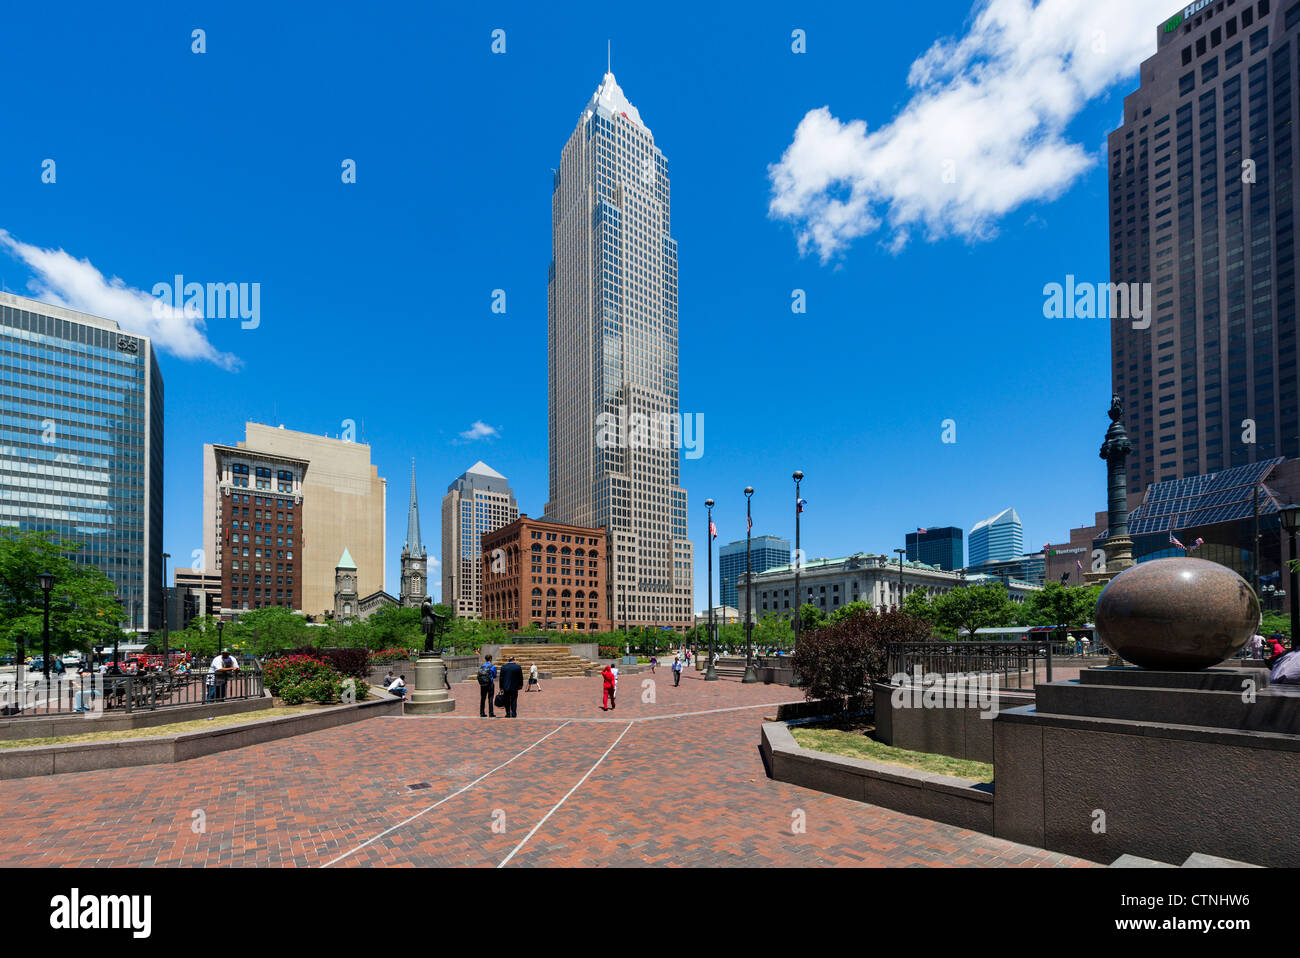 Place publique dans le centre-ville de Cleveland, Ohio, USA Banque D'Images